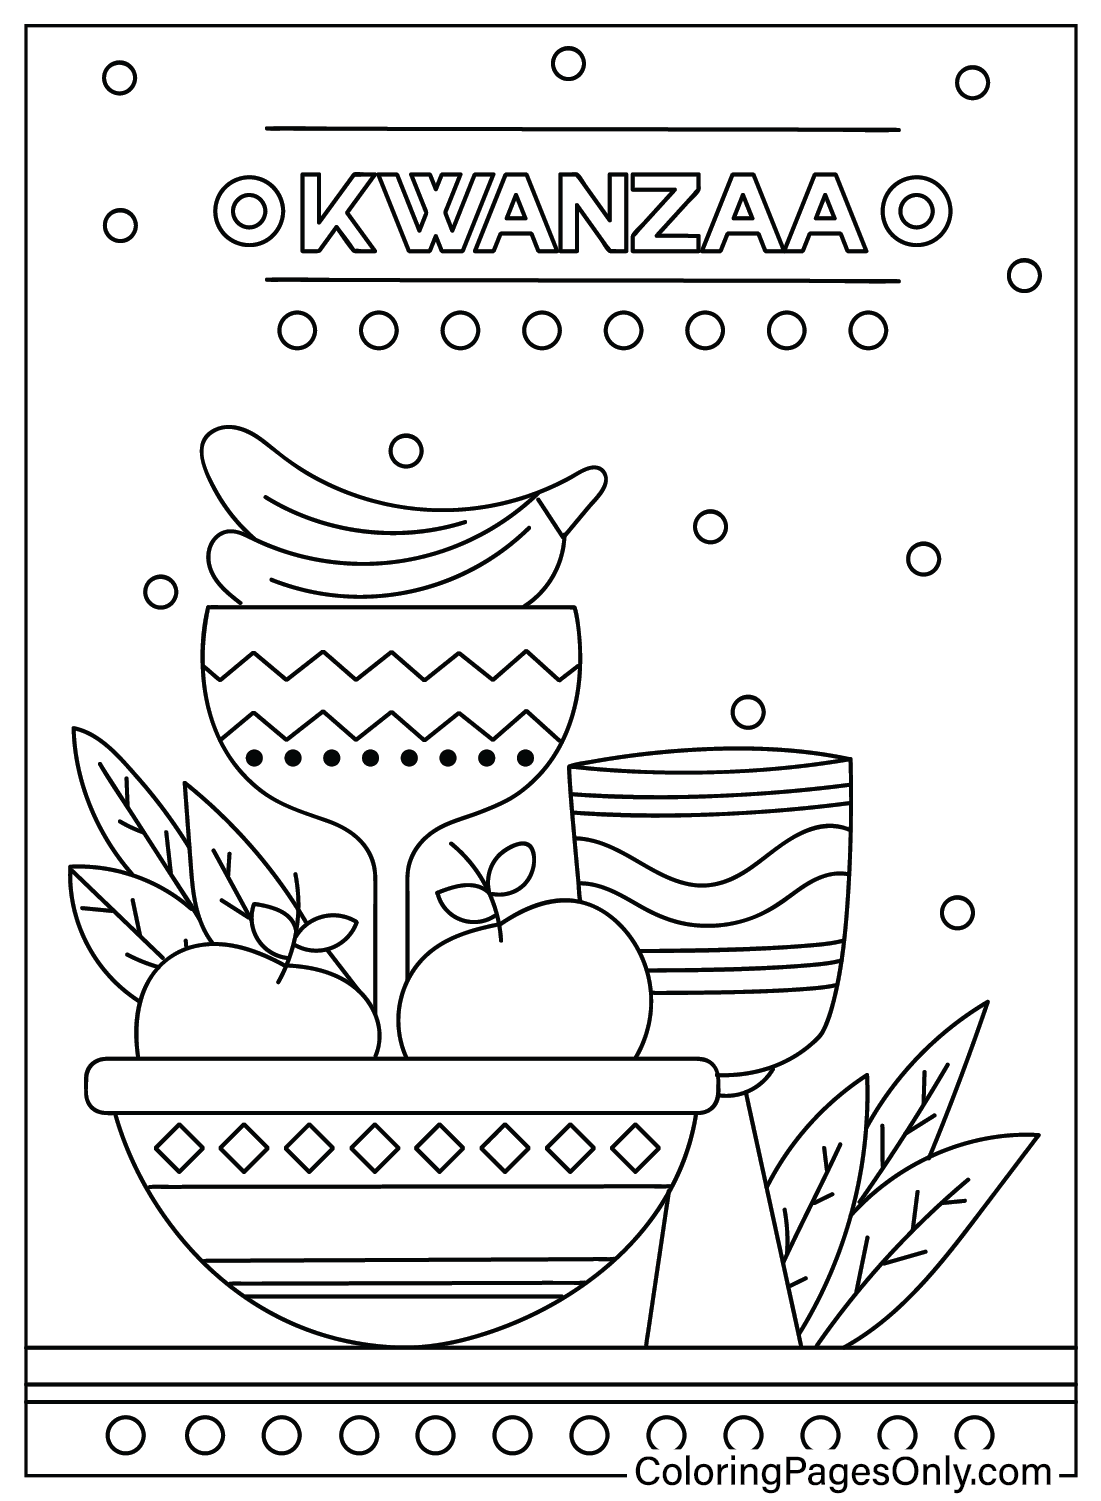 Kwanzaa Página para colorear gratis de Kwanzaa